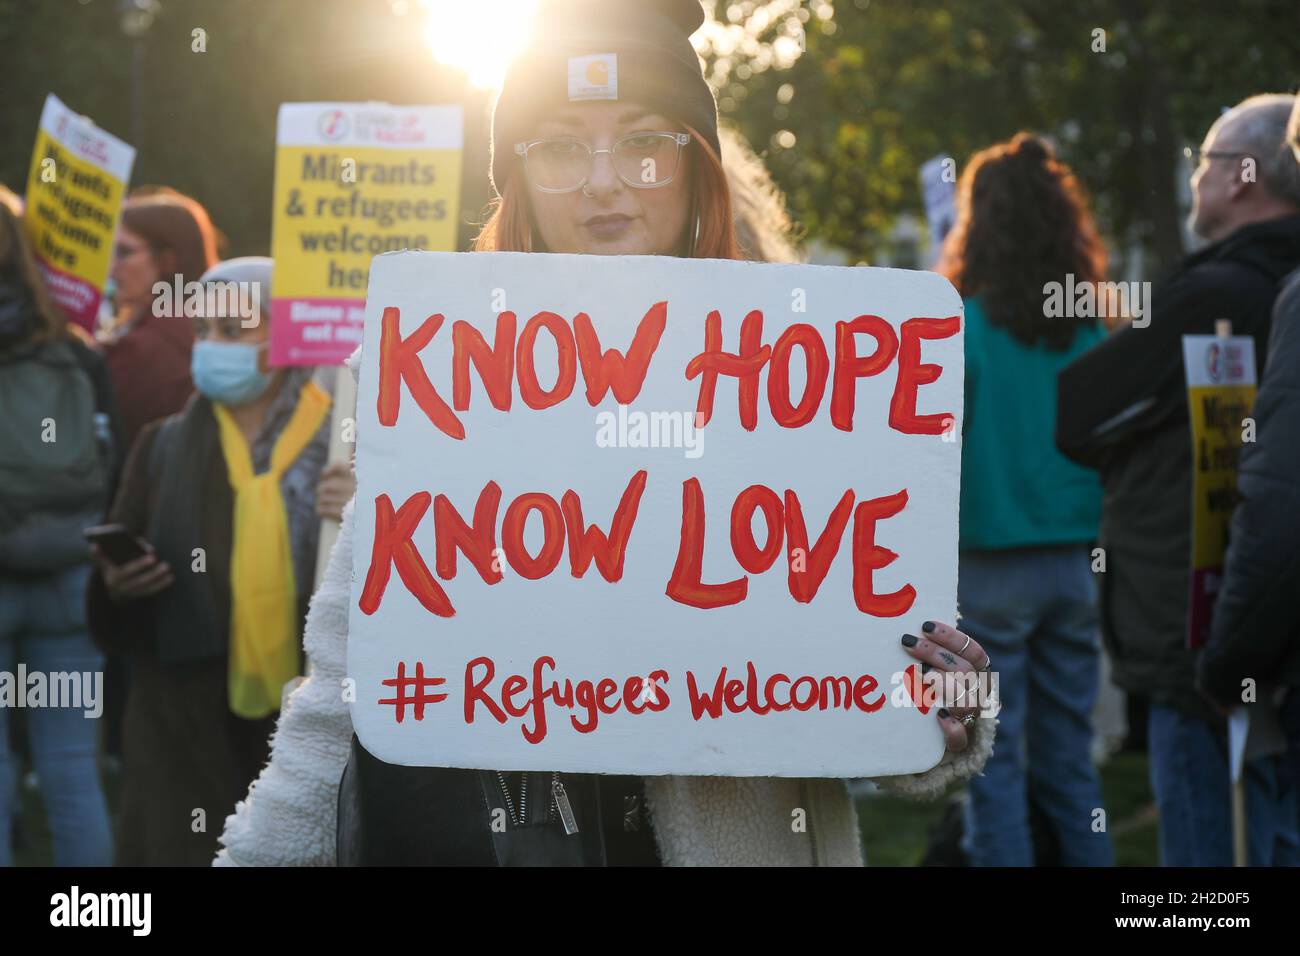 LONDRES, REINO UNIDO. 20 DE OCTUBRE de 2021: Refugiados Bienvenida Protesta contra el proyecto de ley anti-refugiados de Prati Patel sobre la Plaza del Parlamento Crédito: Lucy North/Alamy Live News Foto de stock